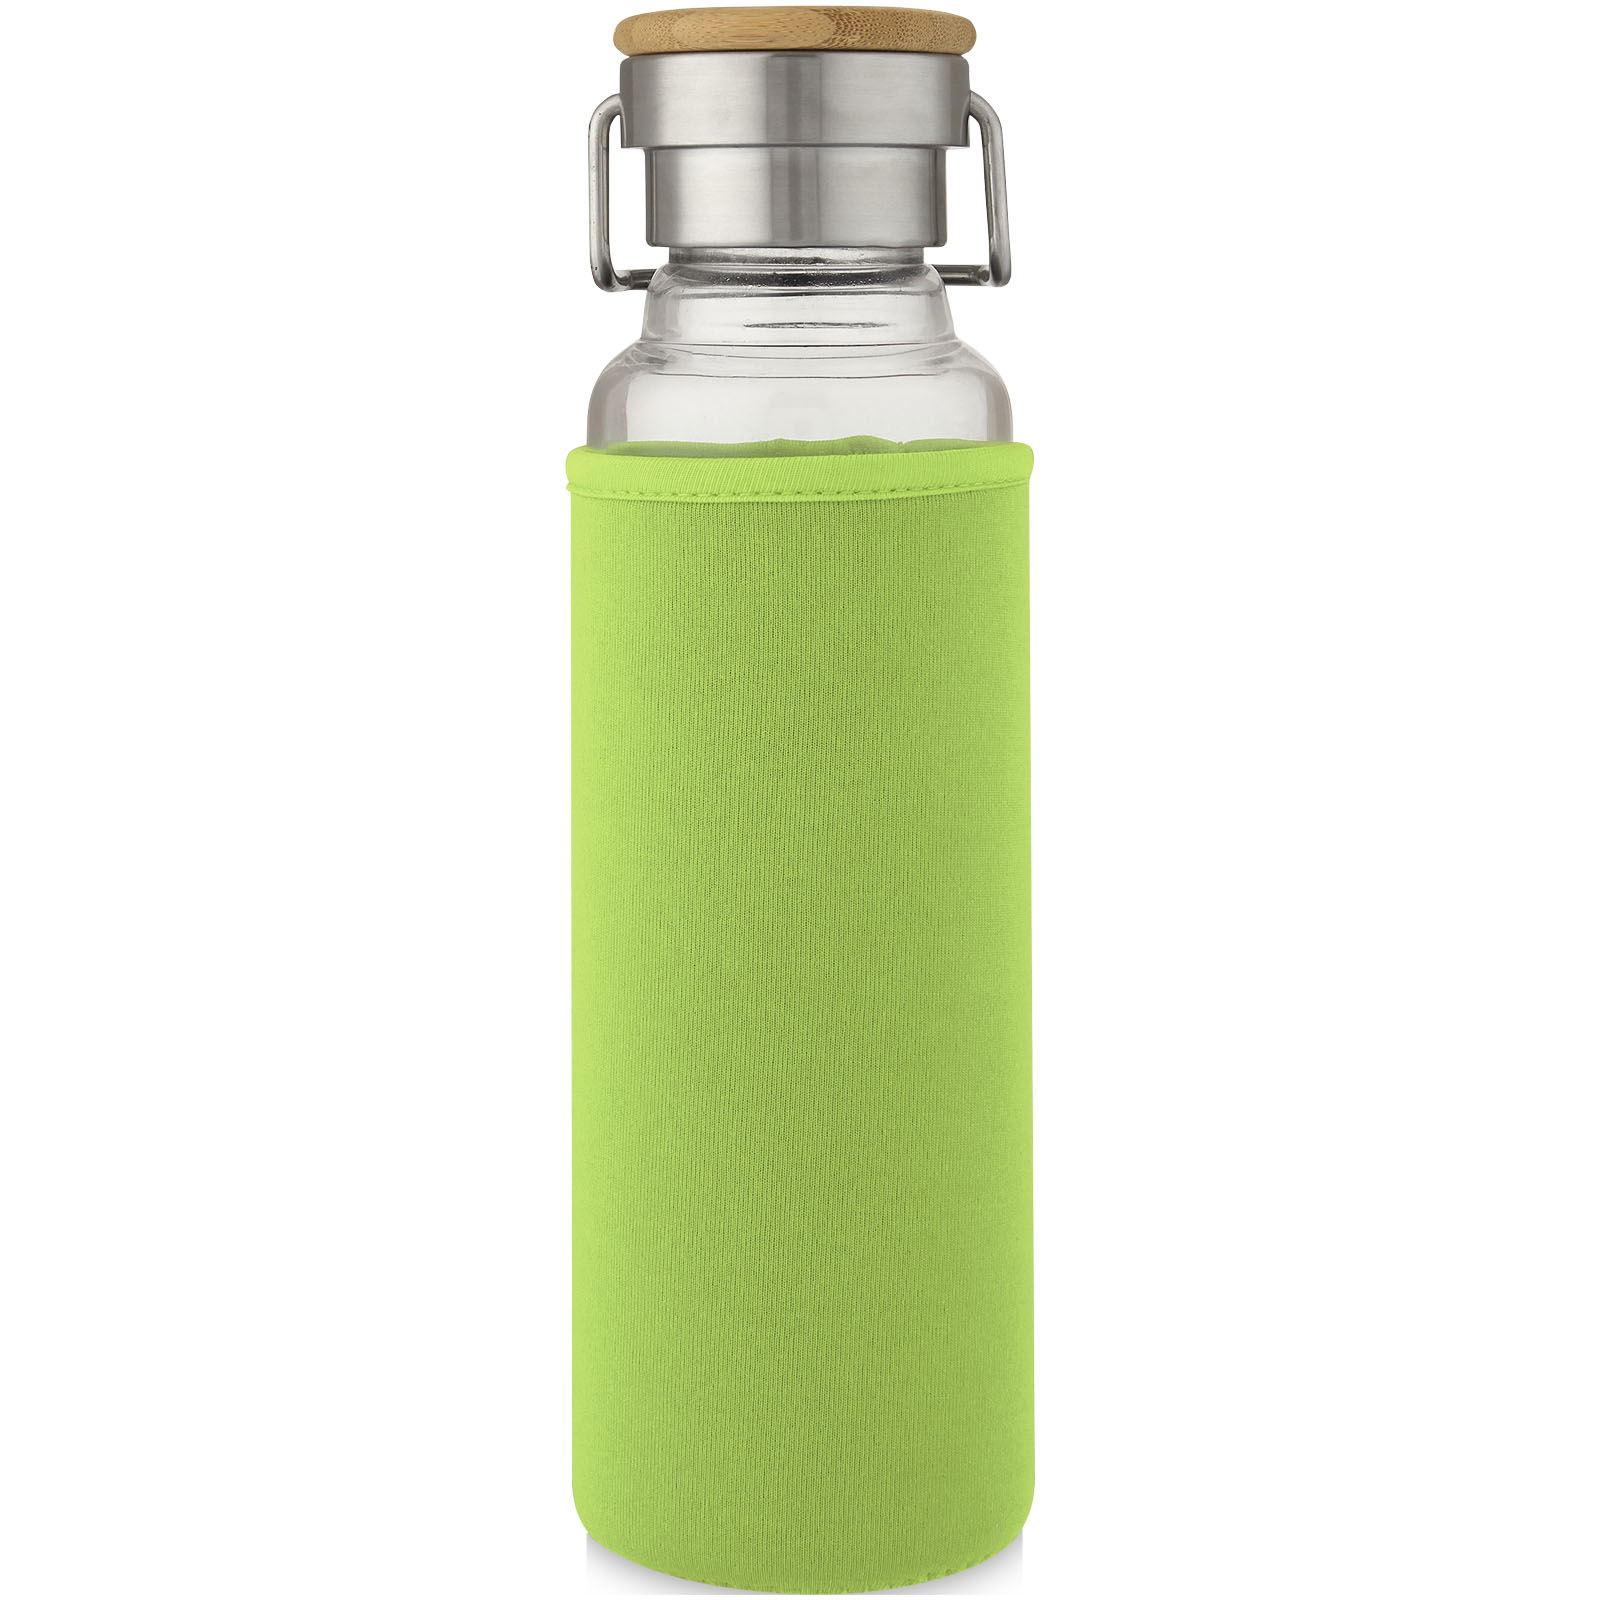 Eco Gifts Thor 660 ml glass bottle with neoprene sleeve